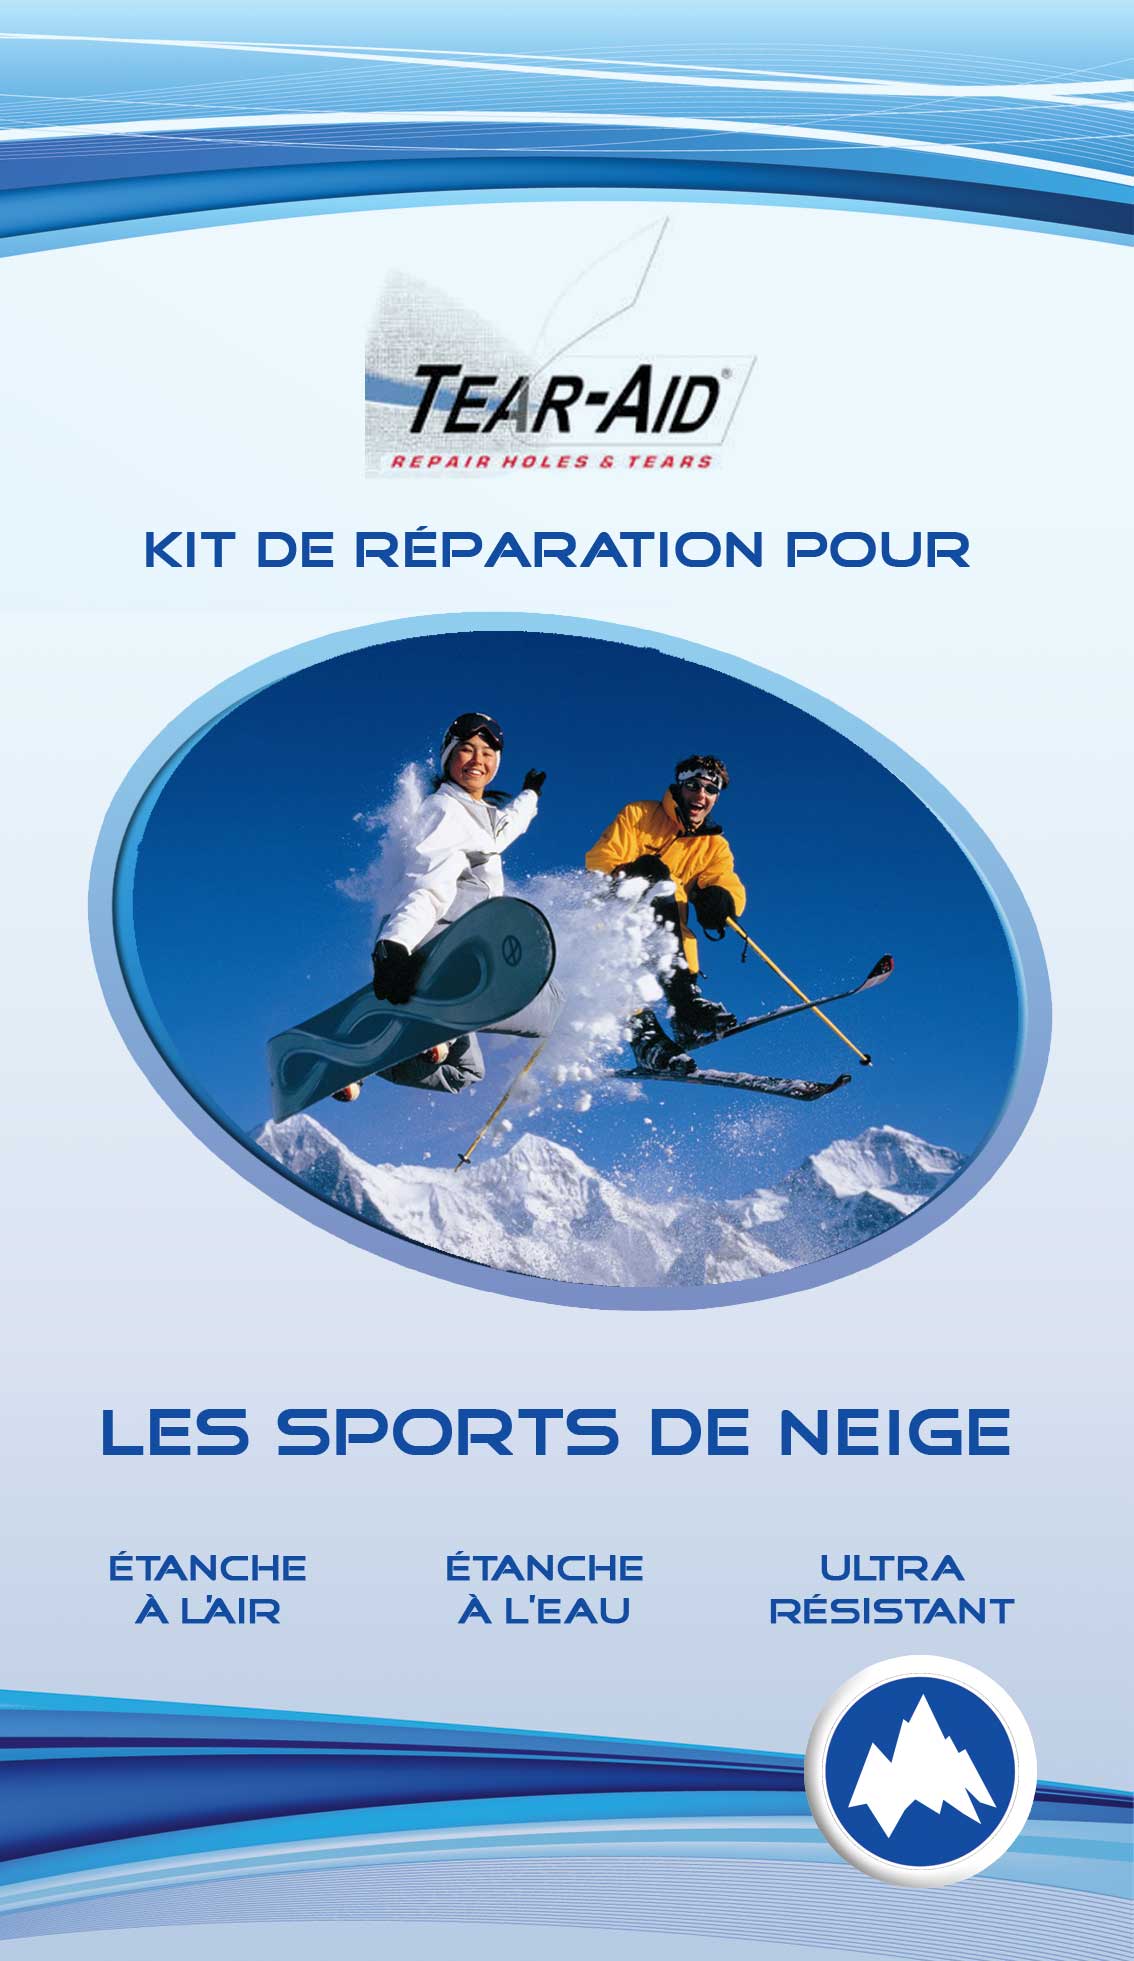 Le pack Tear-Aid pour le ski, le snowboard, la raquette et autres sports d'hiver